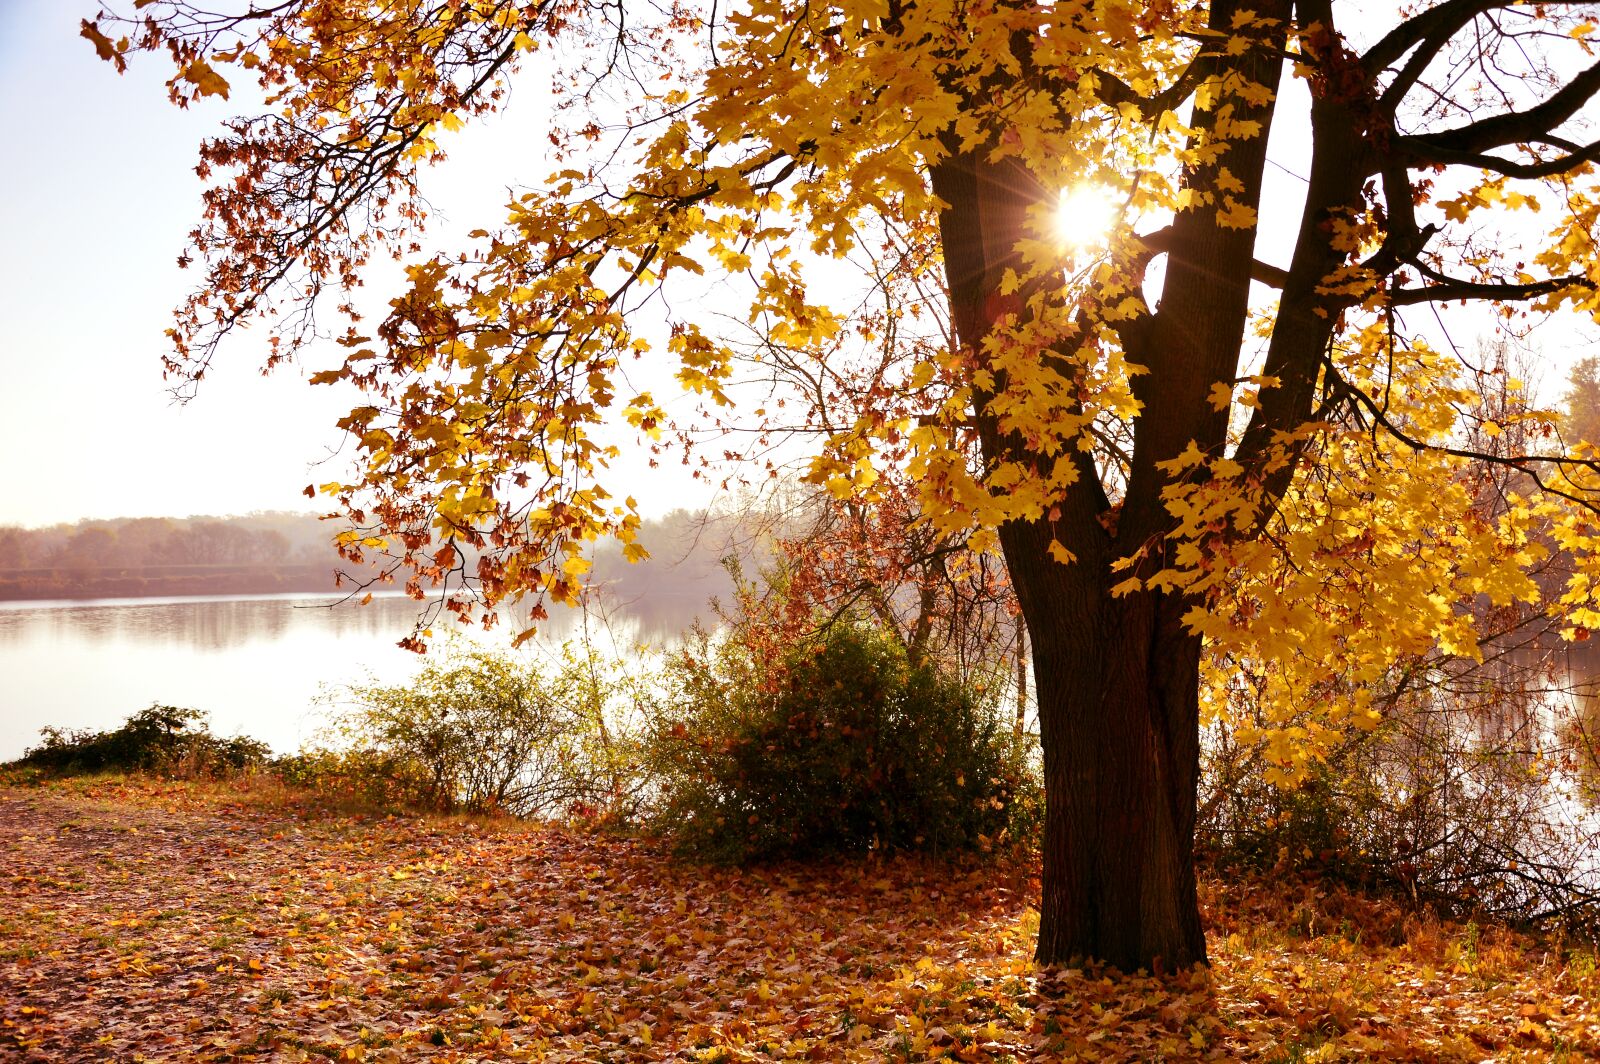 Nikon D3200 sample photo. Landscape, autumn landscape, nature photography